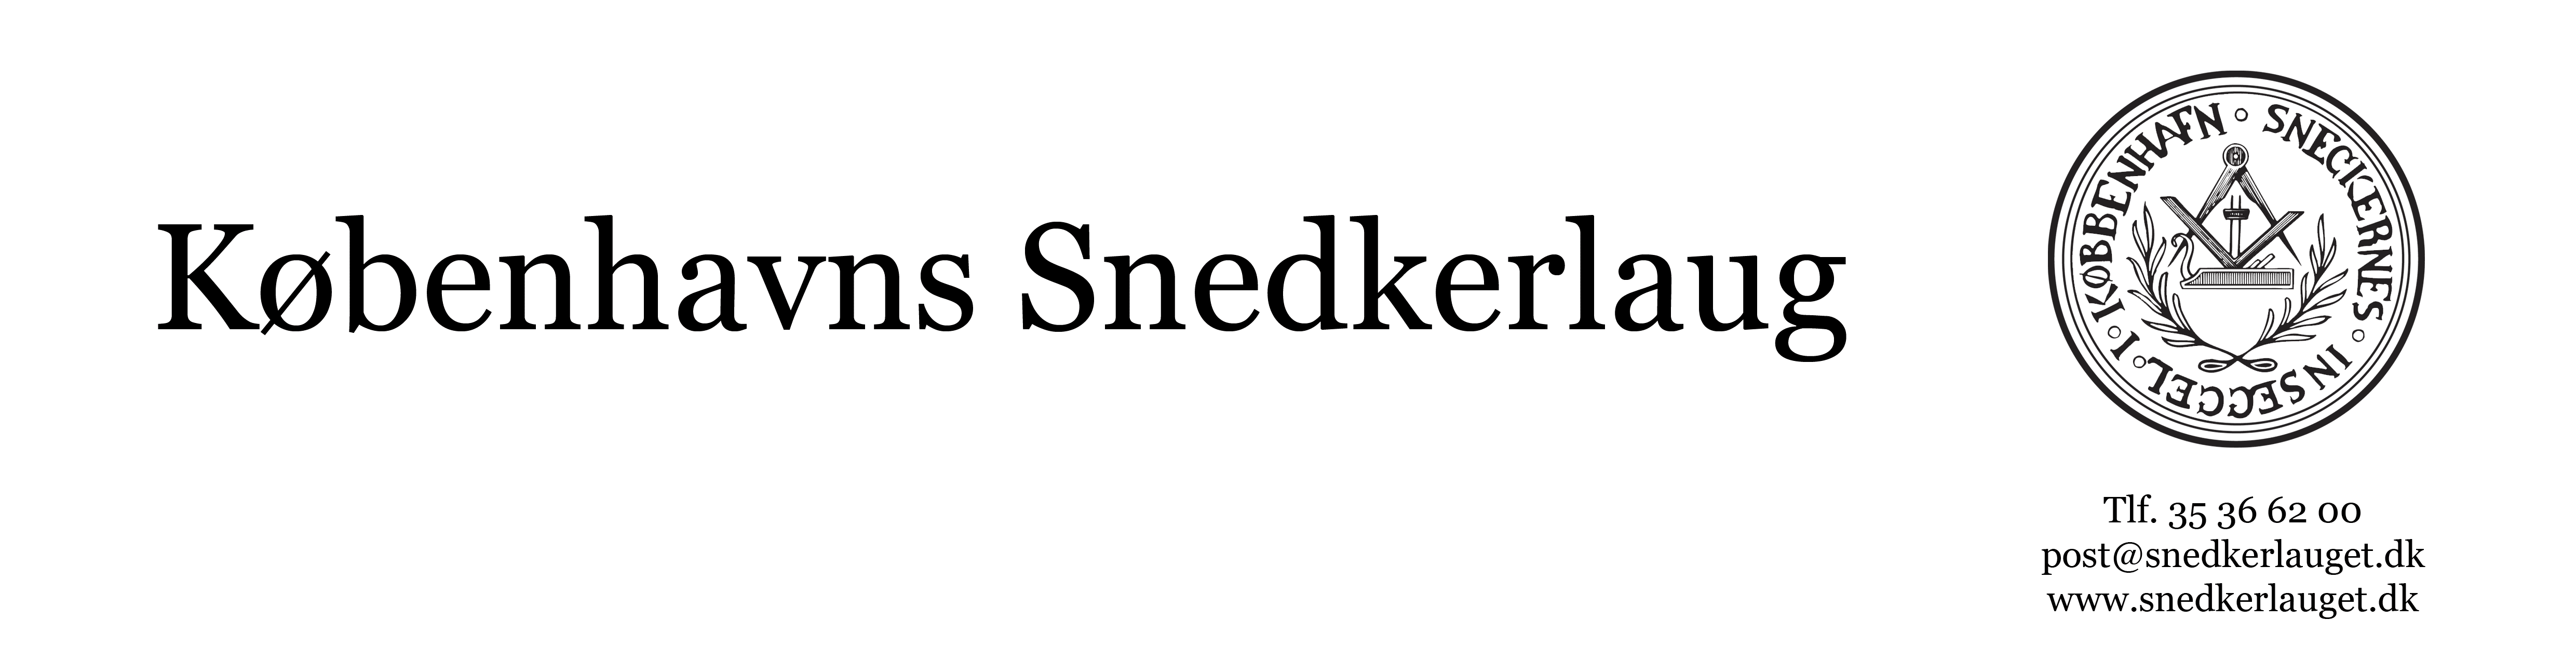 logo_kbh_snedkerlaug_1